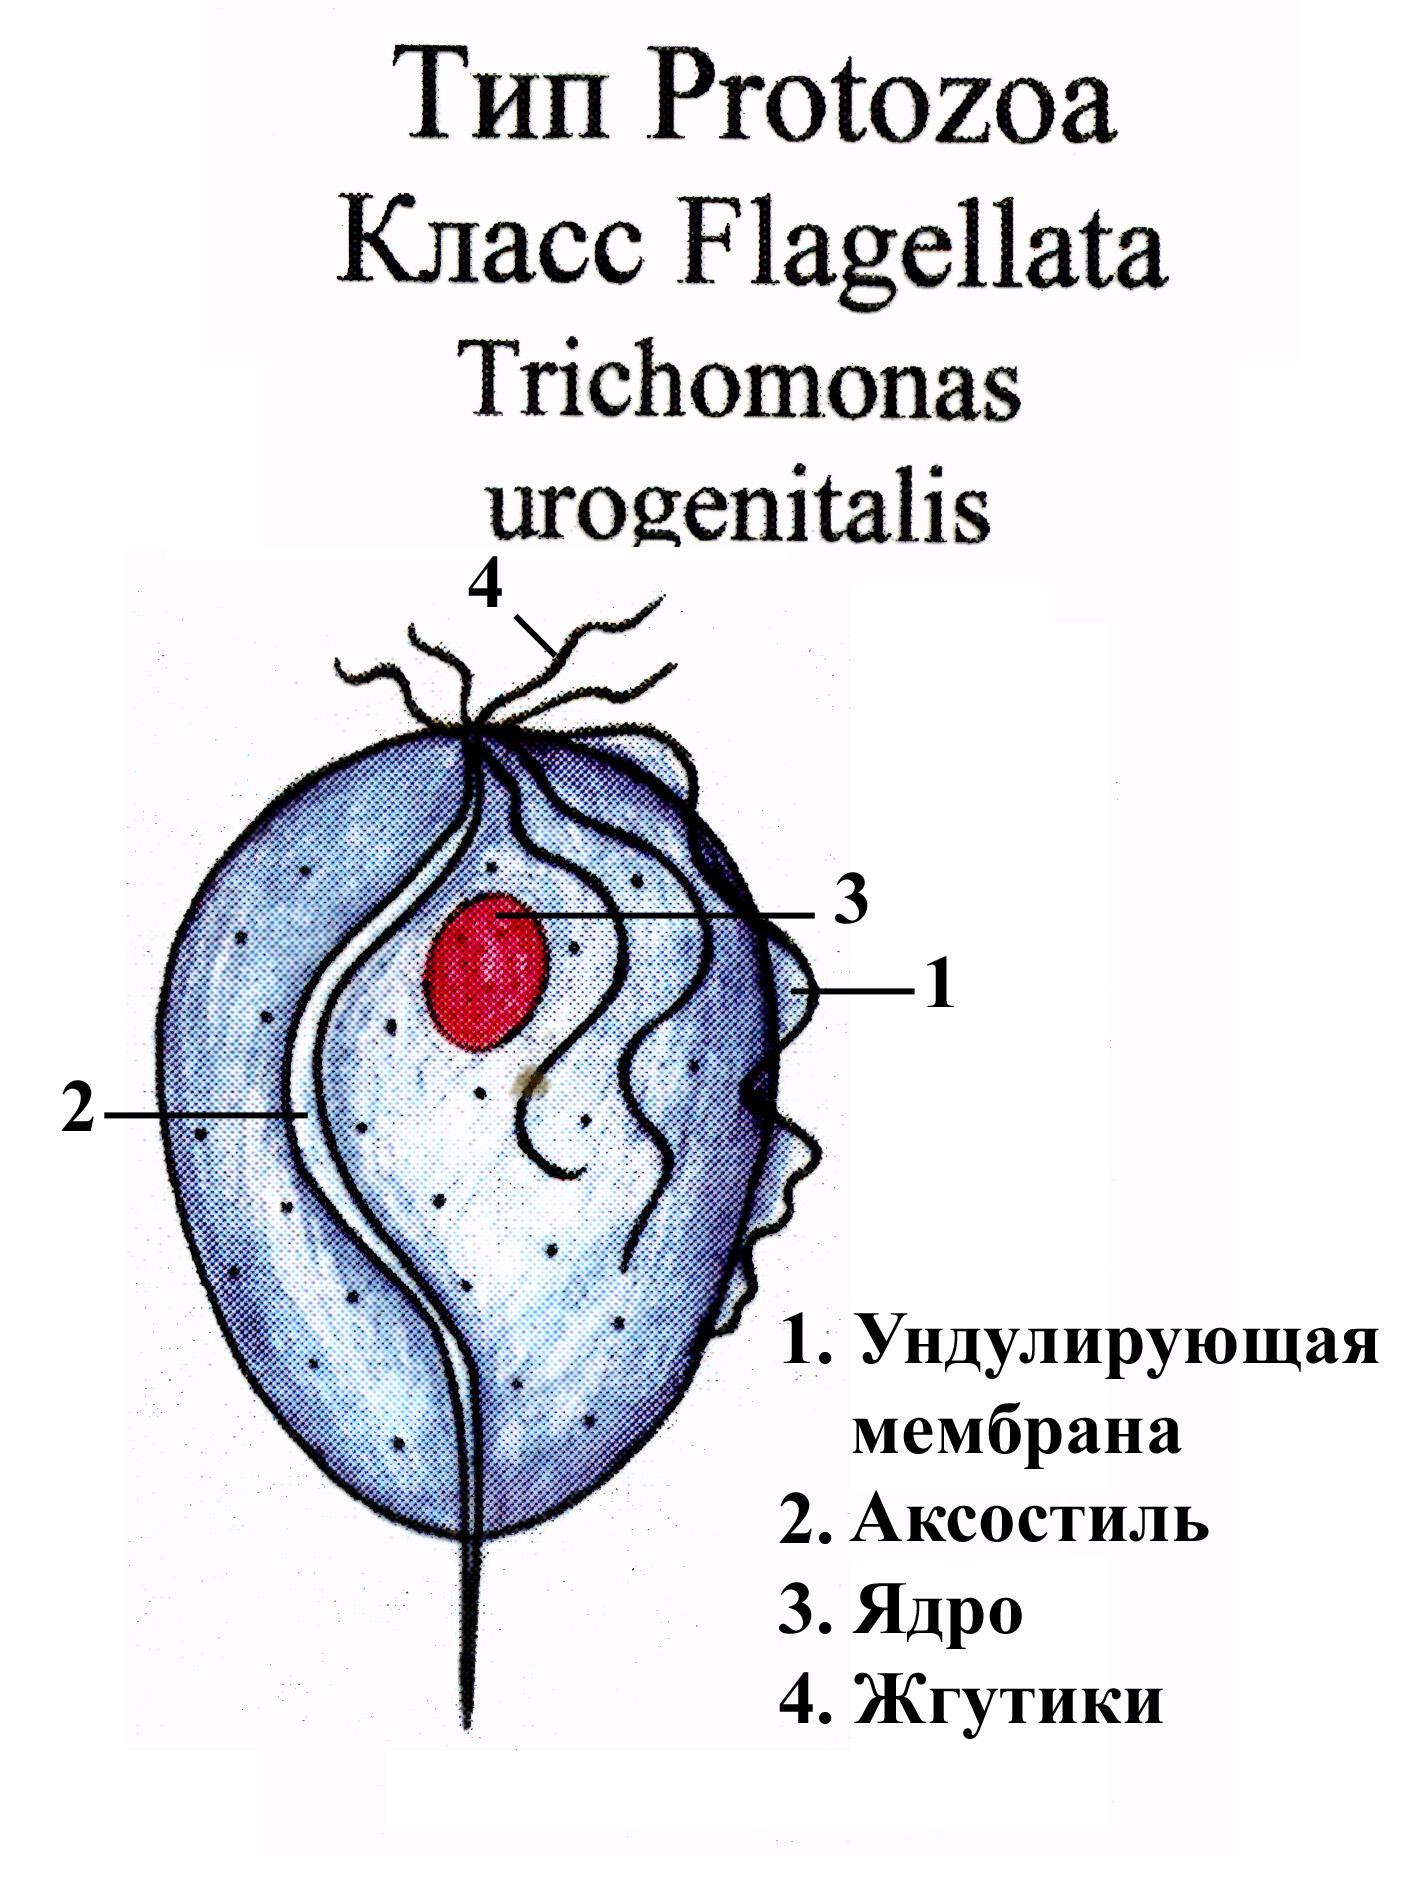 Особенности проявления кишечной трихомонады